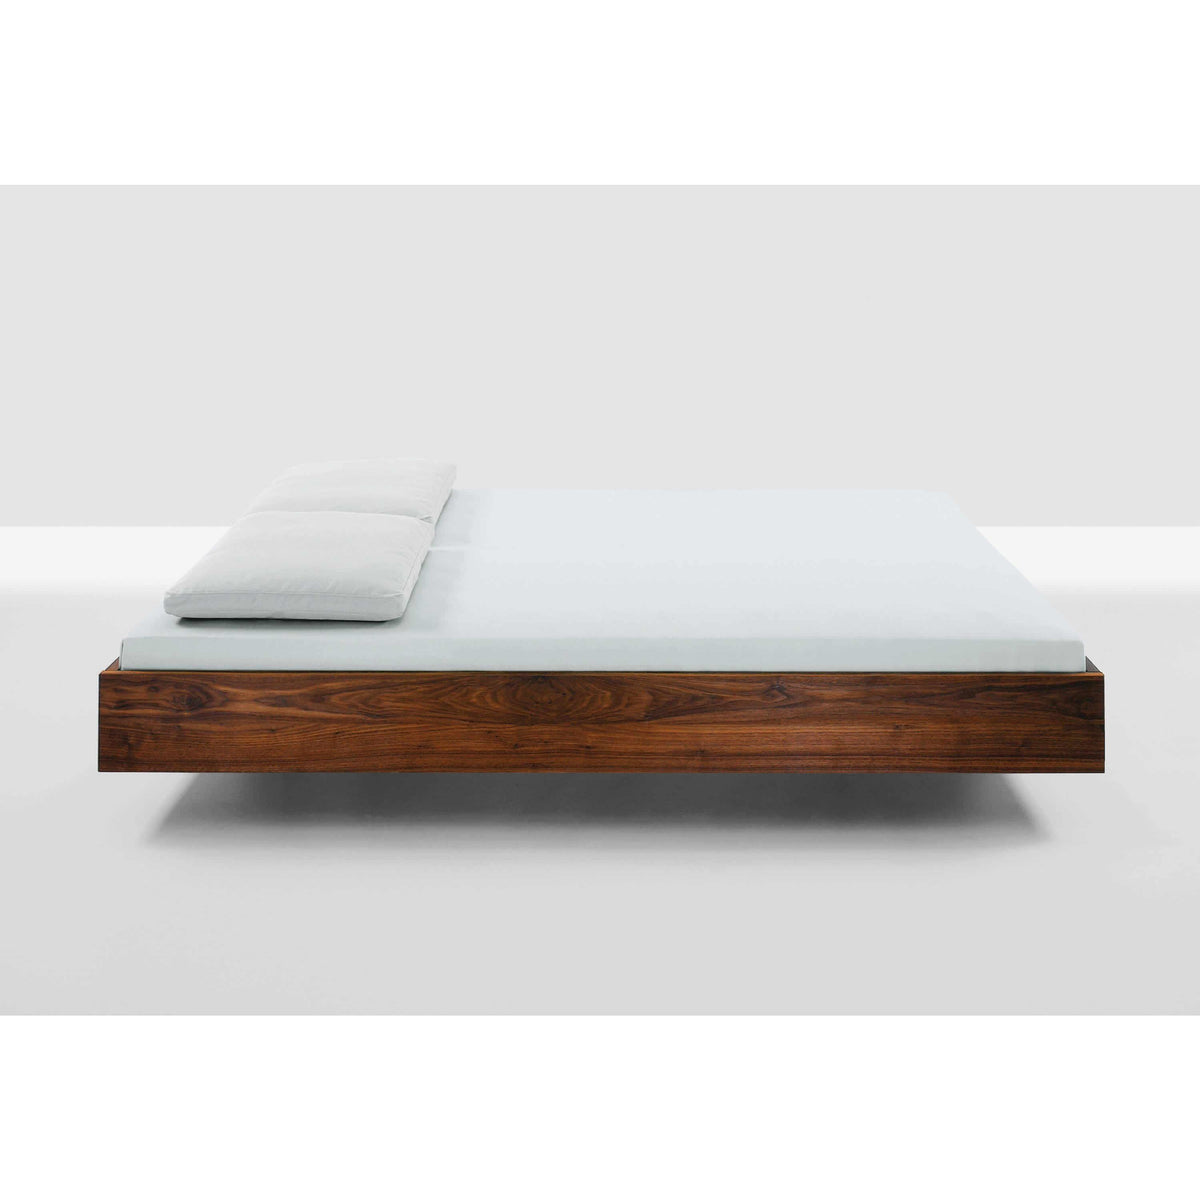 Teak Wood Floating Bed Frame - TimberCraft